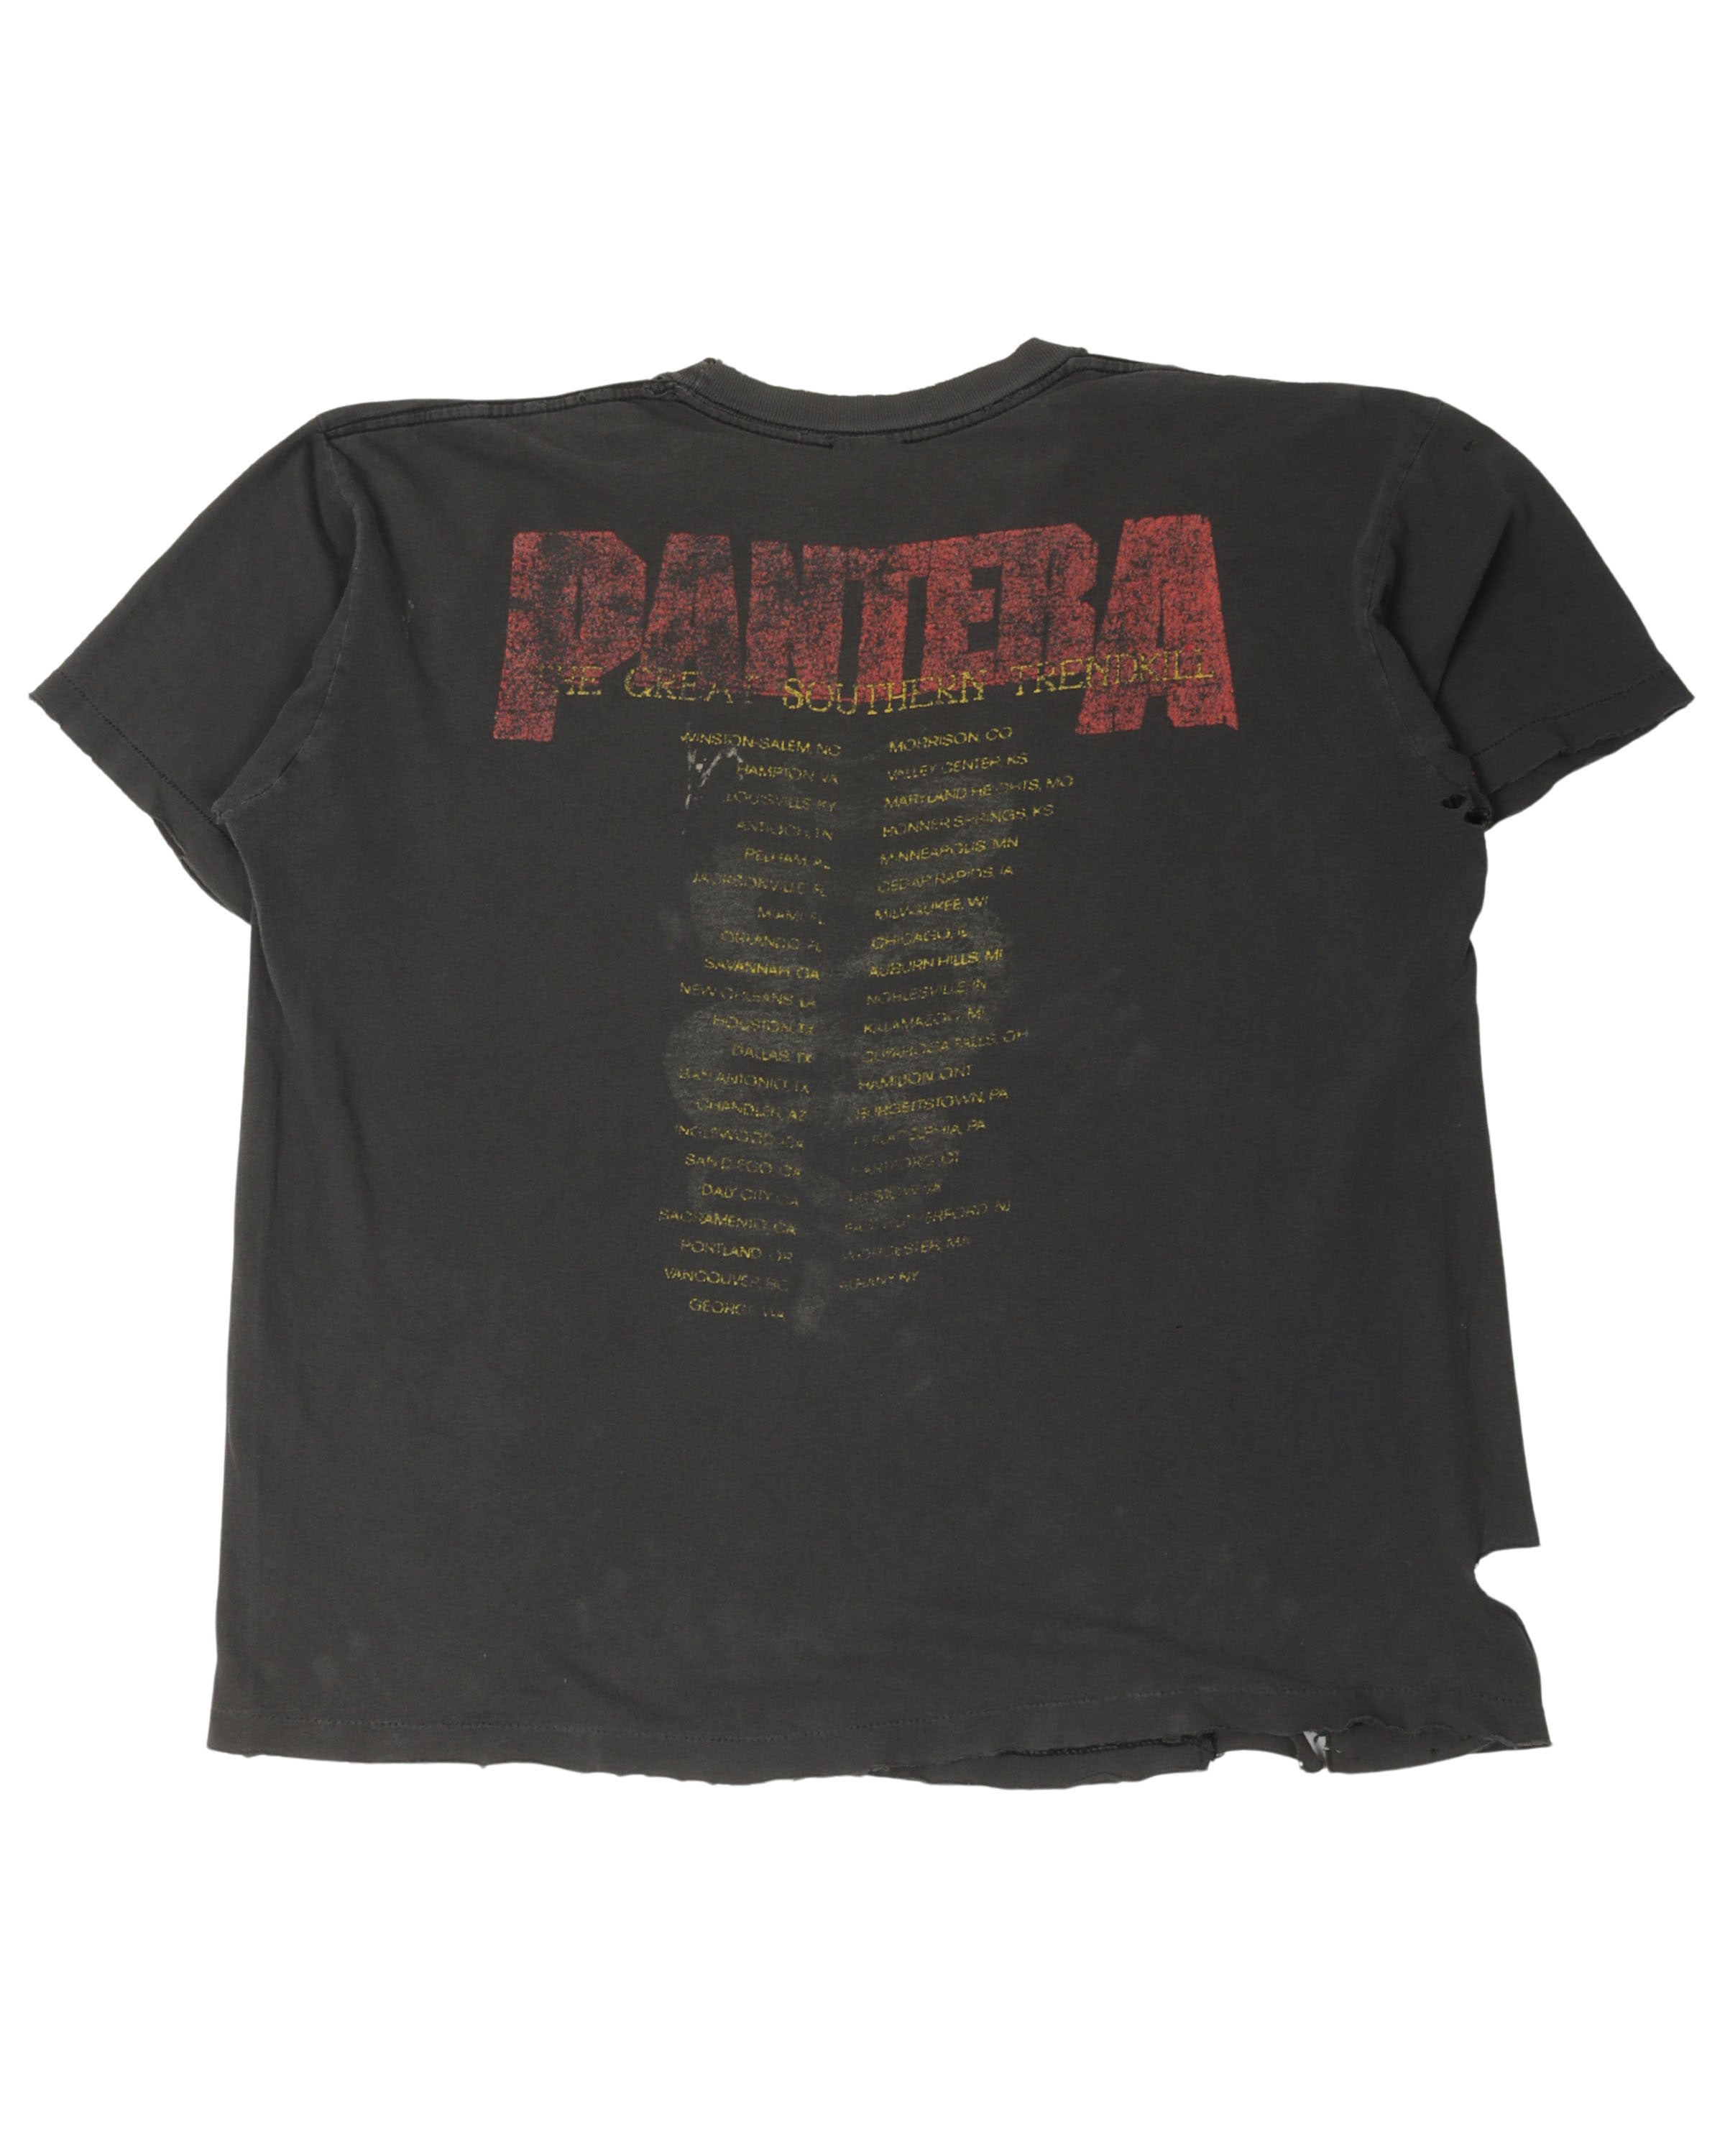 Pantera The Great Southern Trendkill T-Shirt